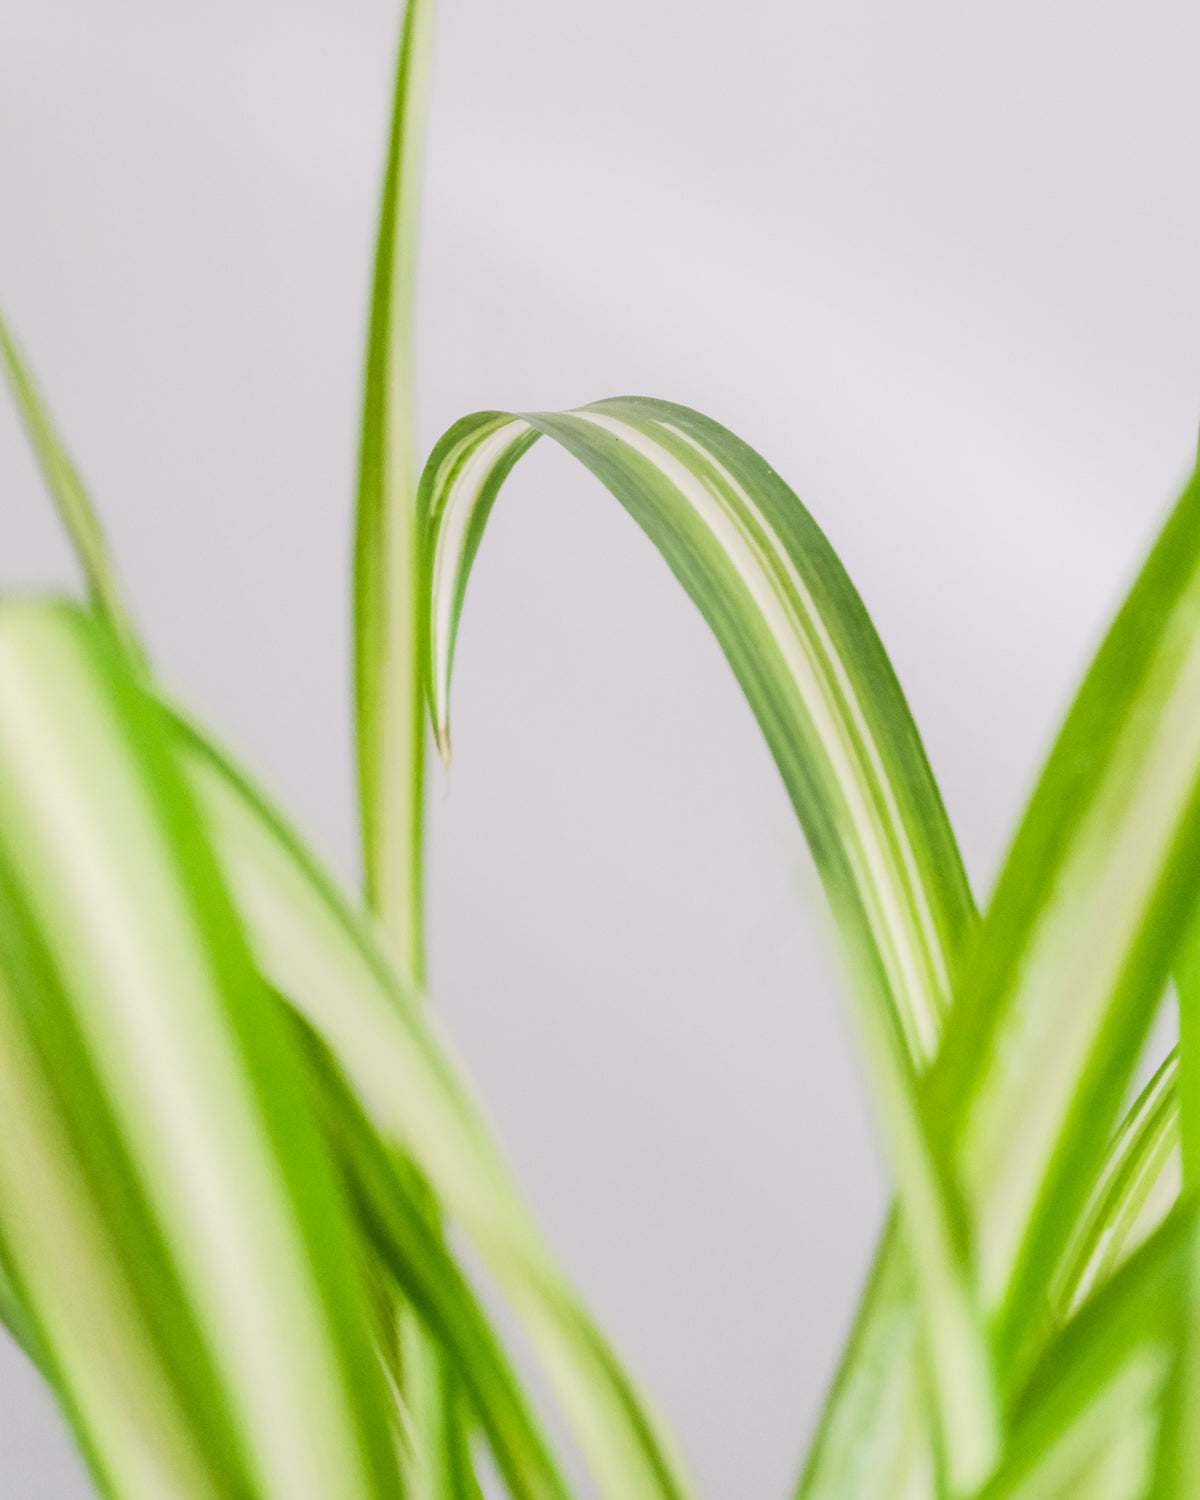 Grünlilie Detailaufnahme von Blättern